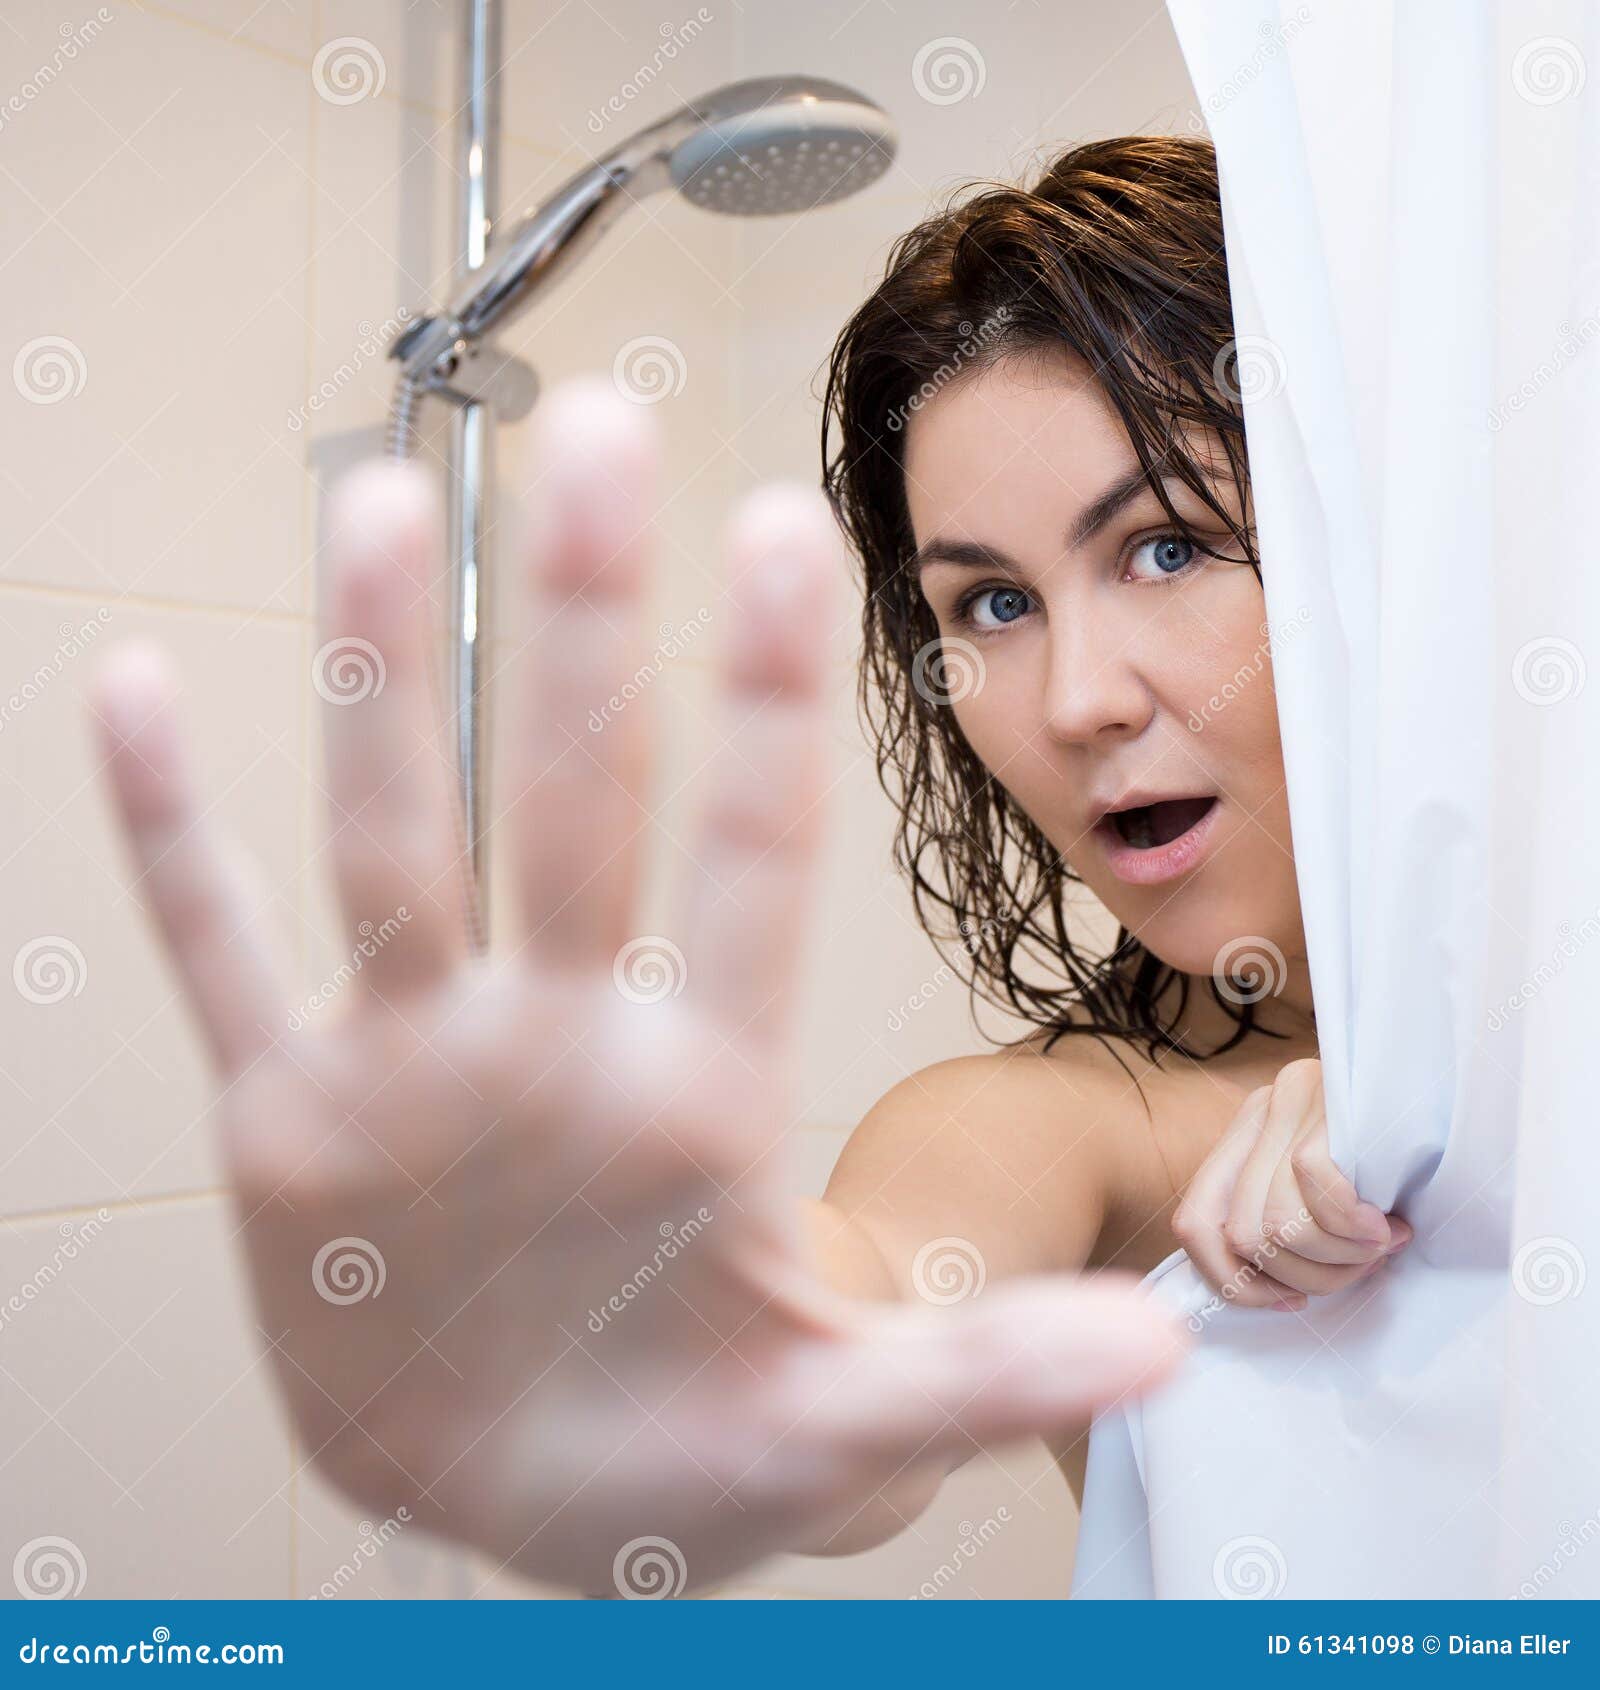 Мама в душе рассказ. Девушка в ванной за шторкой. Женщина в душе прикрывается. Взрослые женщины в душе. Девушка в душе за шторкой.